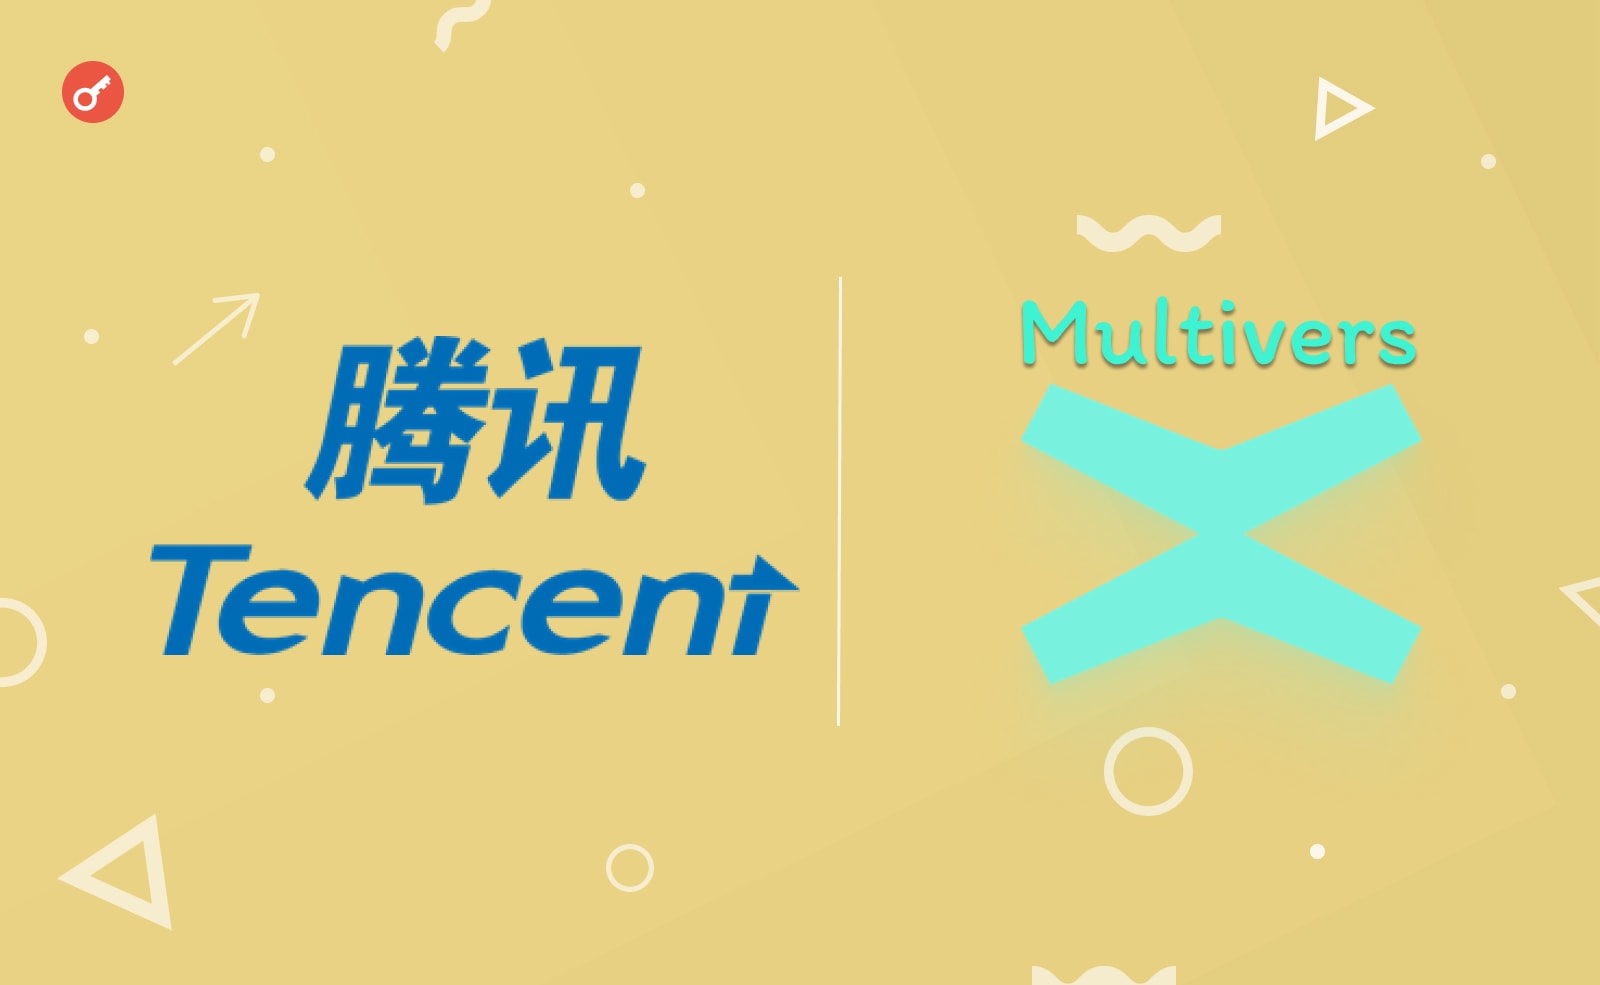 Tencent стал партнером MultiversX. Он будет использовать эту сеть для создания новых продуктов в метавселенных и Web3.